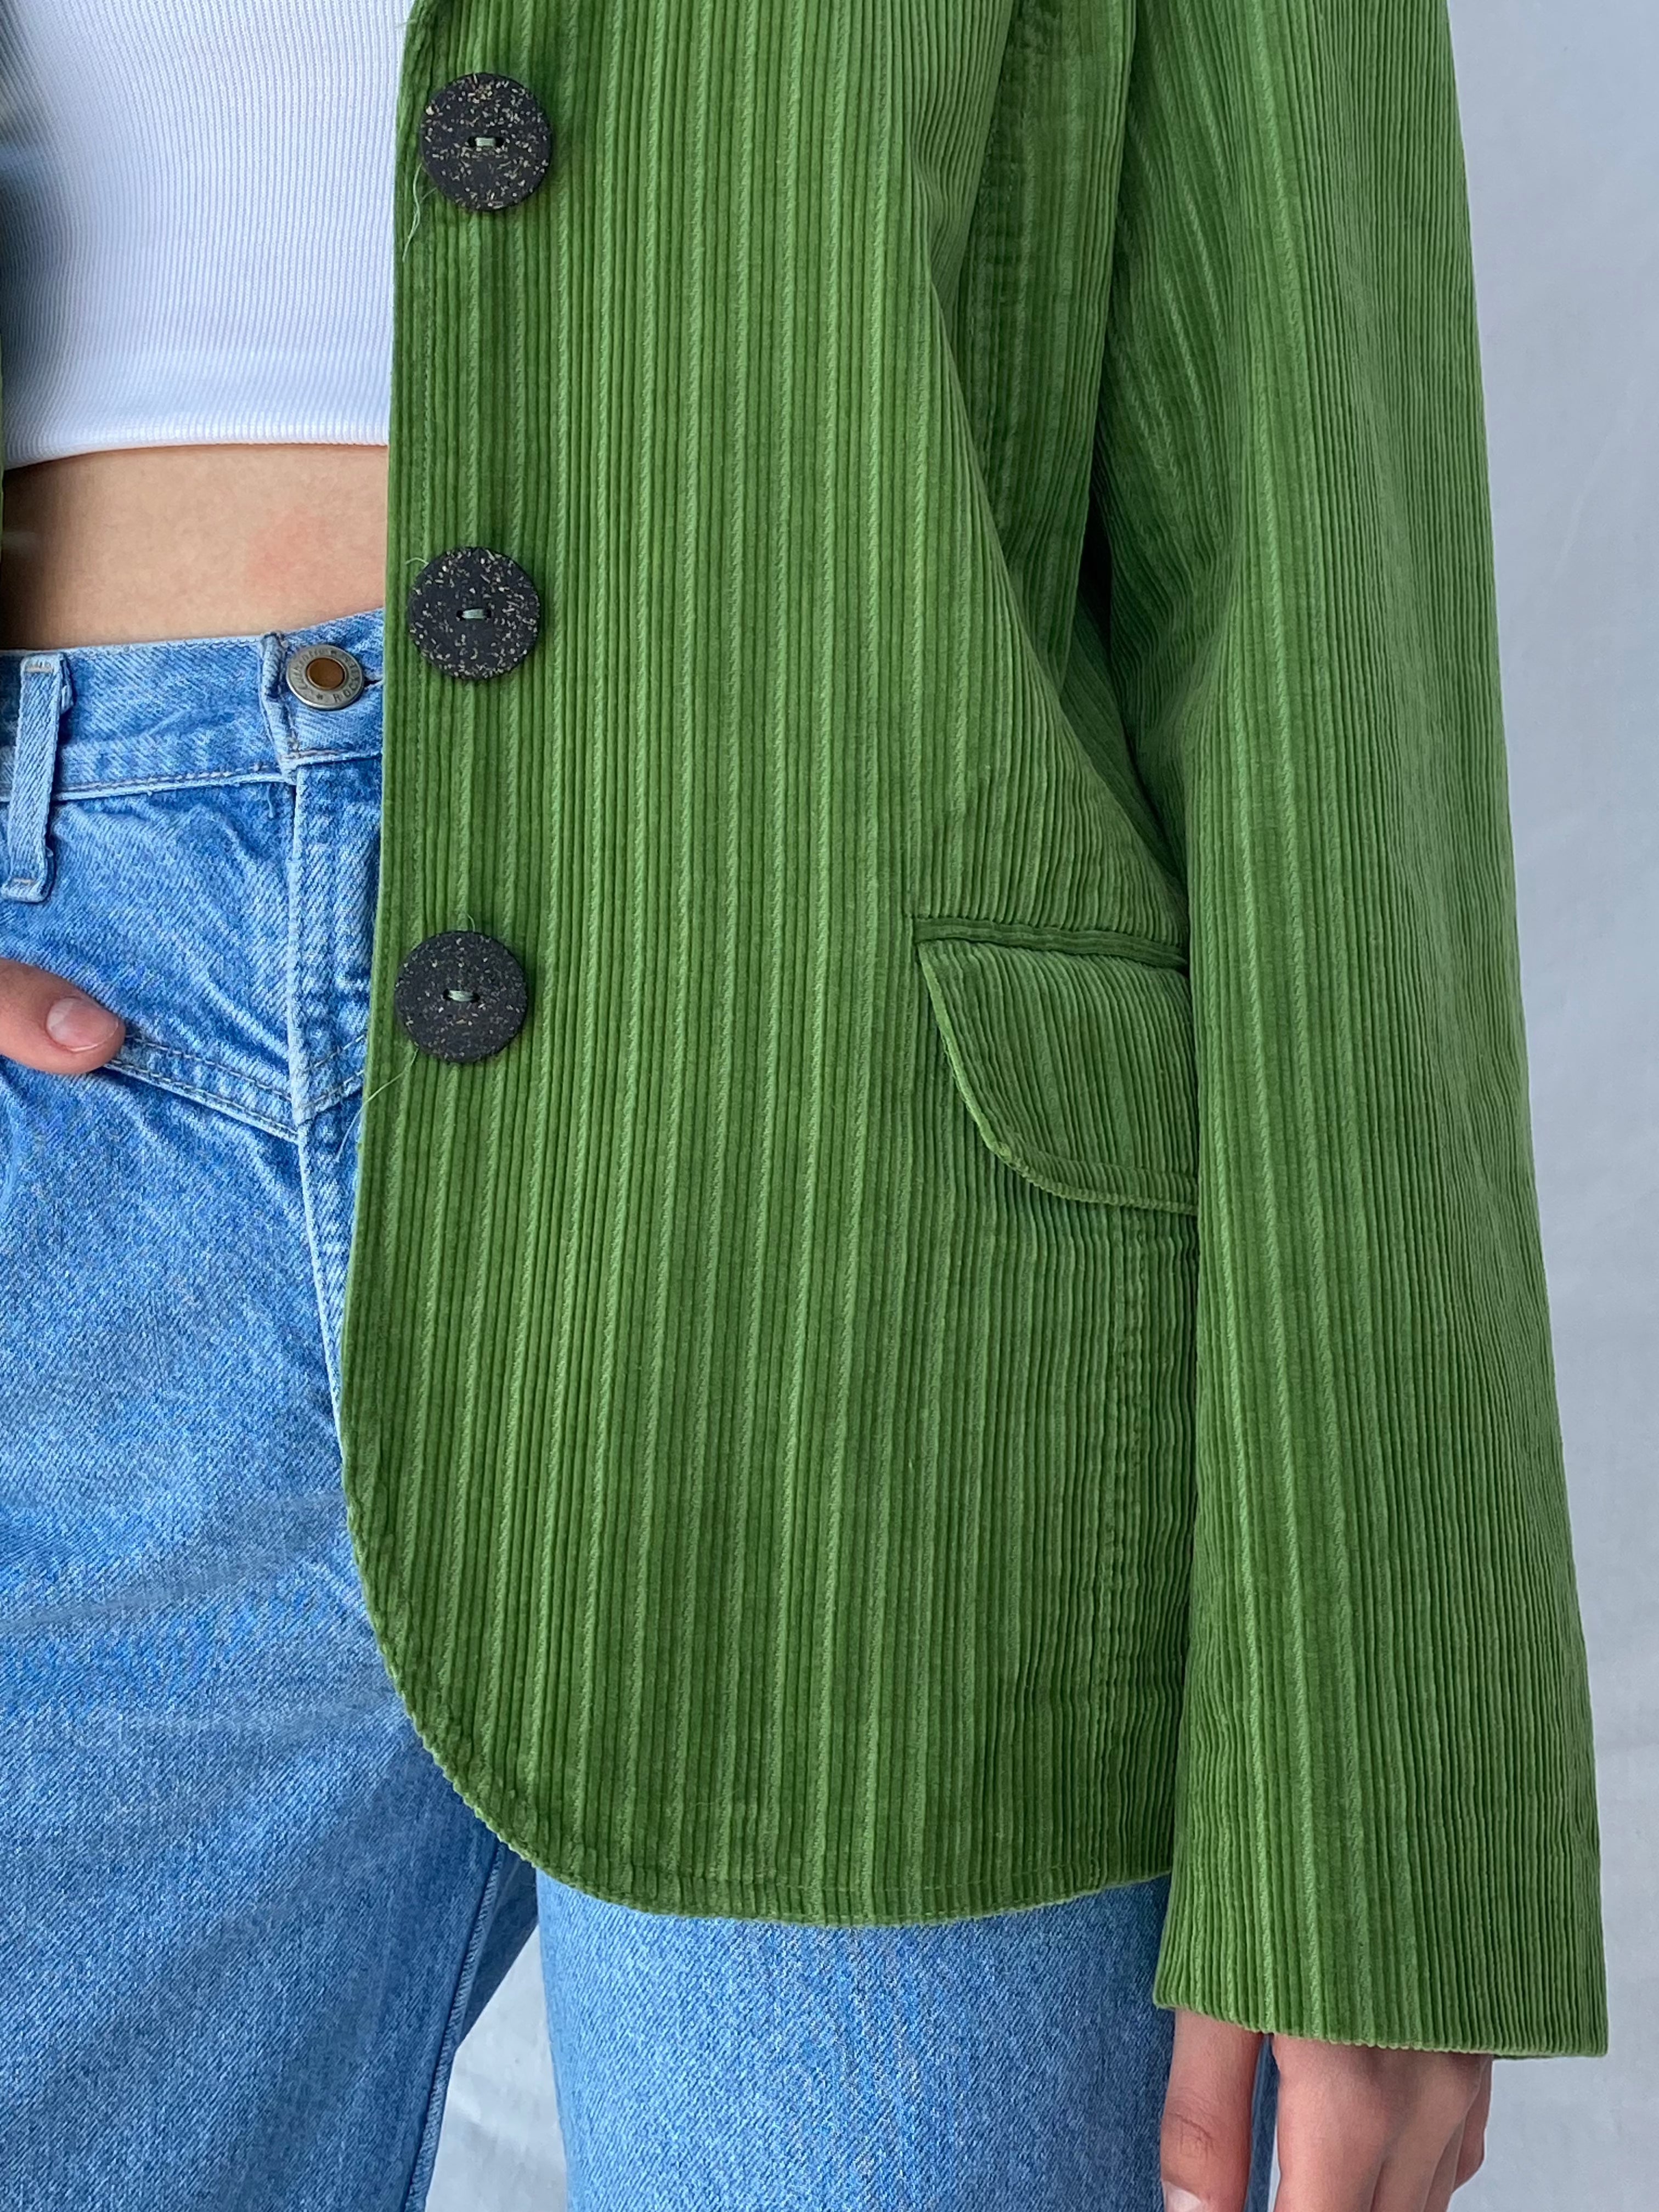 BIAGGINI Corduroy Balzer - Balagan Vintage Blazer blazer, corduroy, corduroy blazer, green